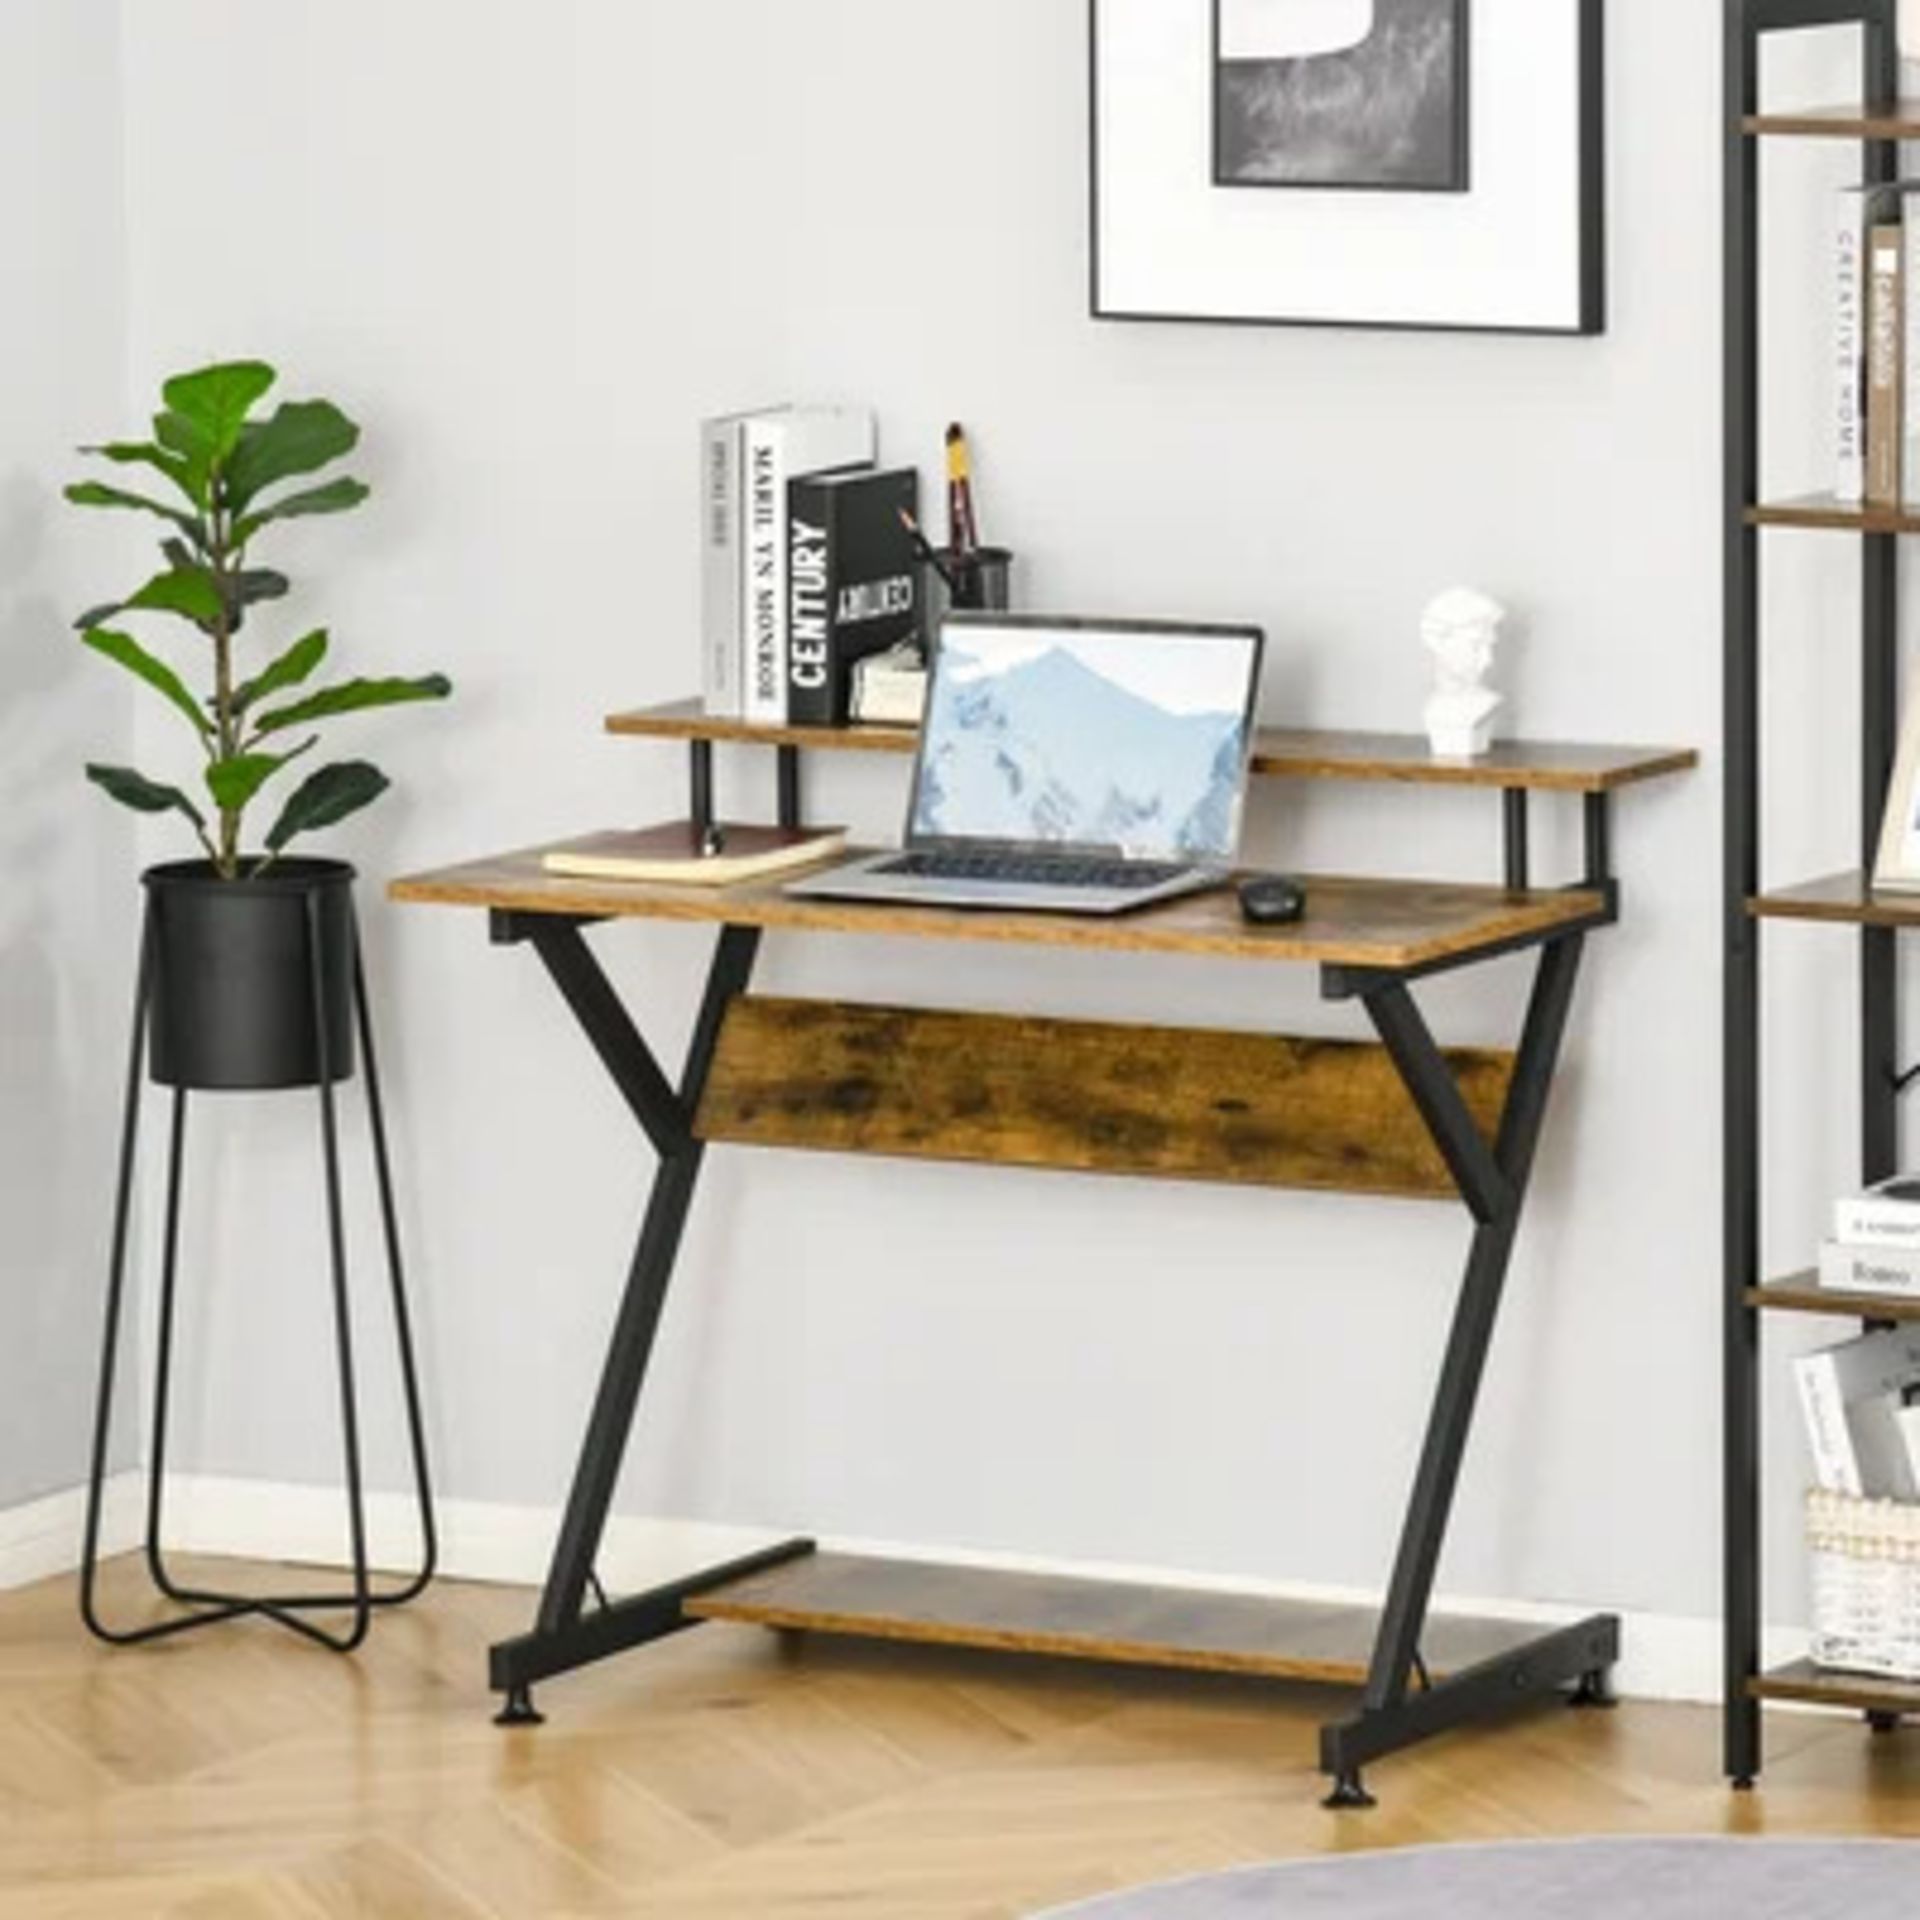 RRP £59.99 - Desk Size: 85.50cm H x 100cm W x 60cm D